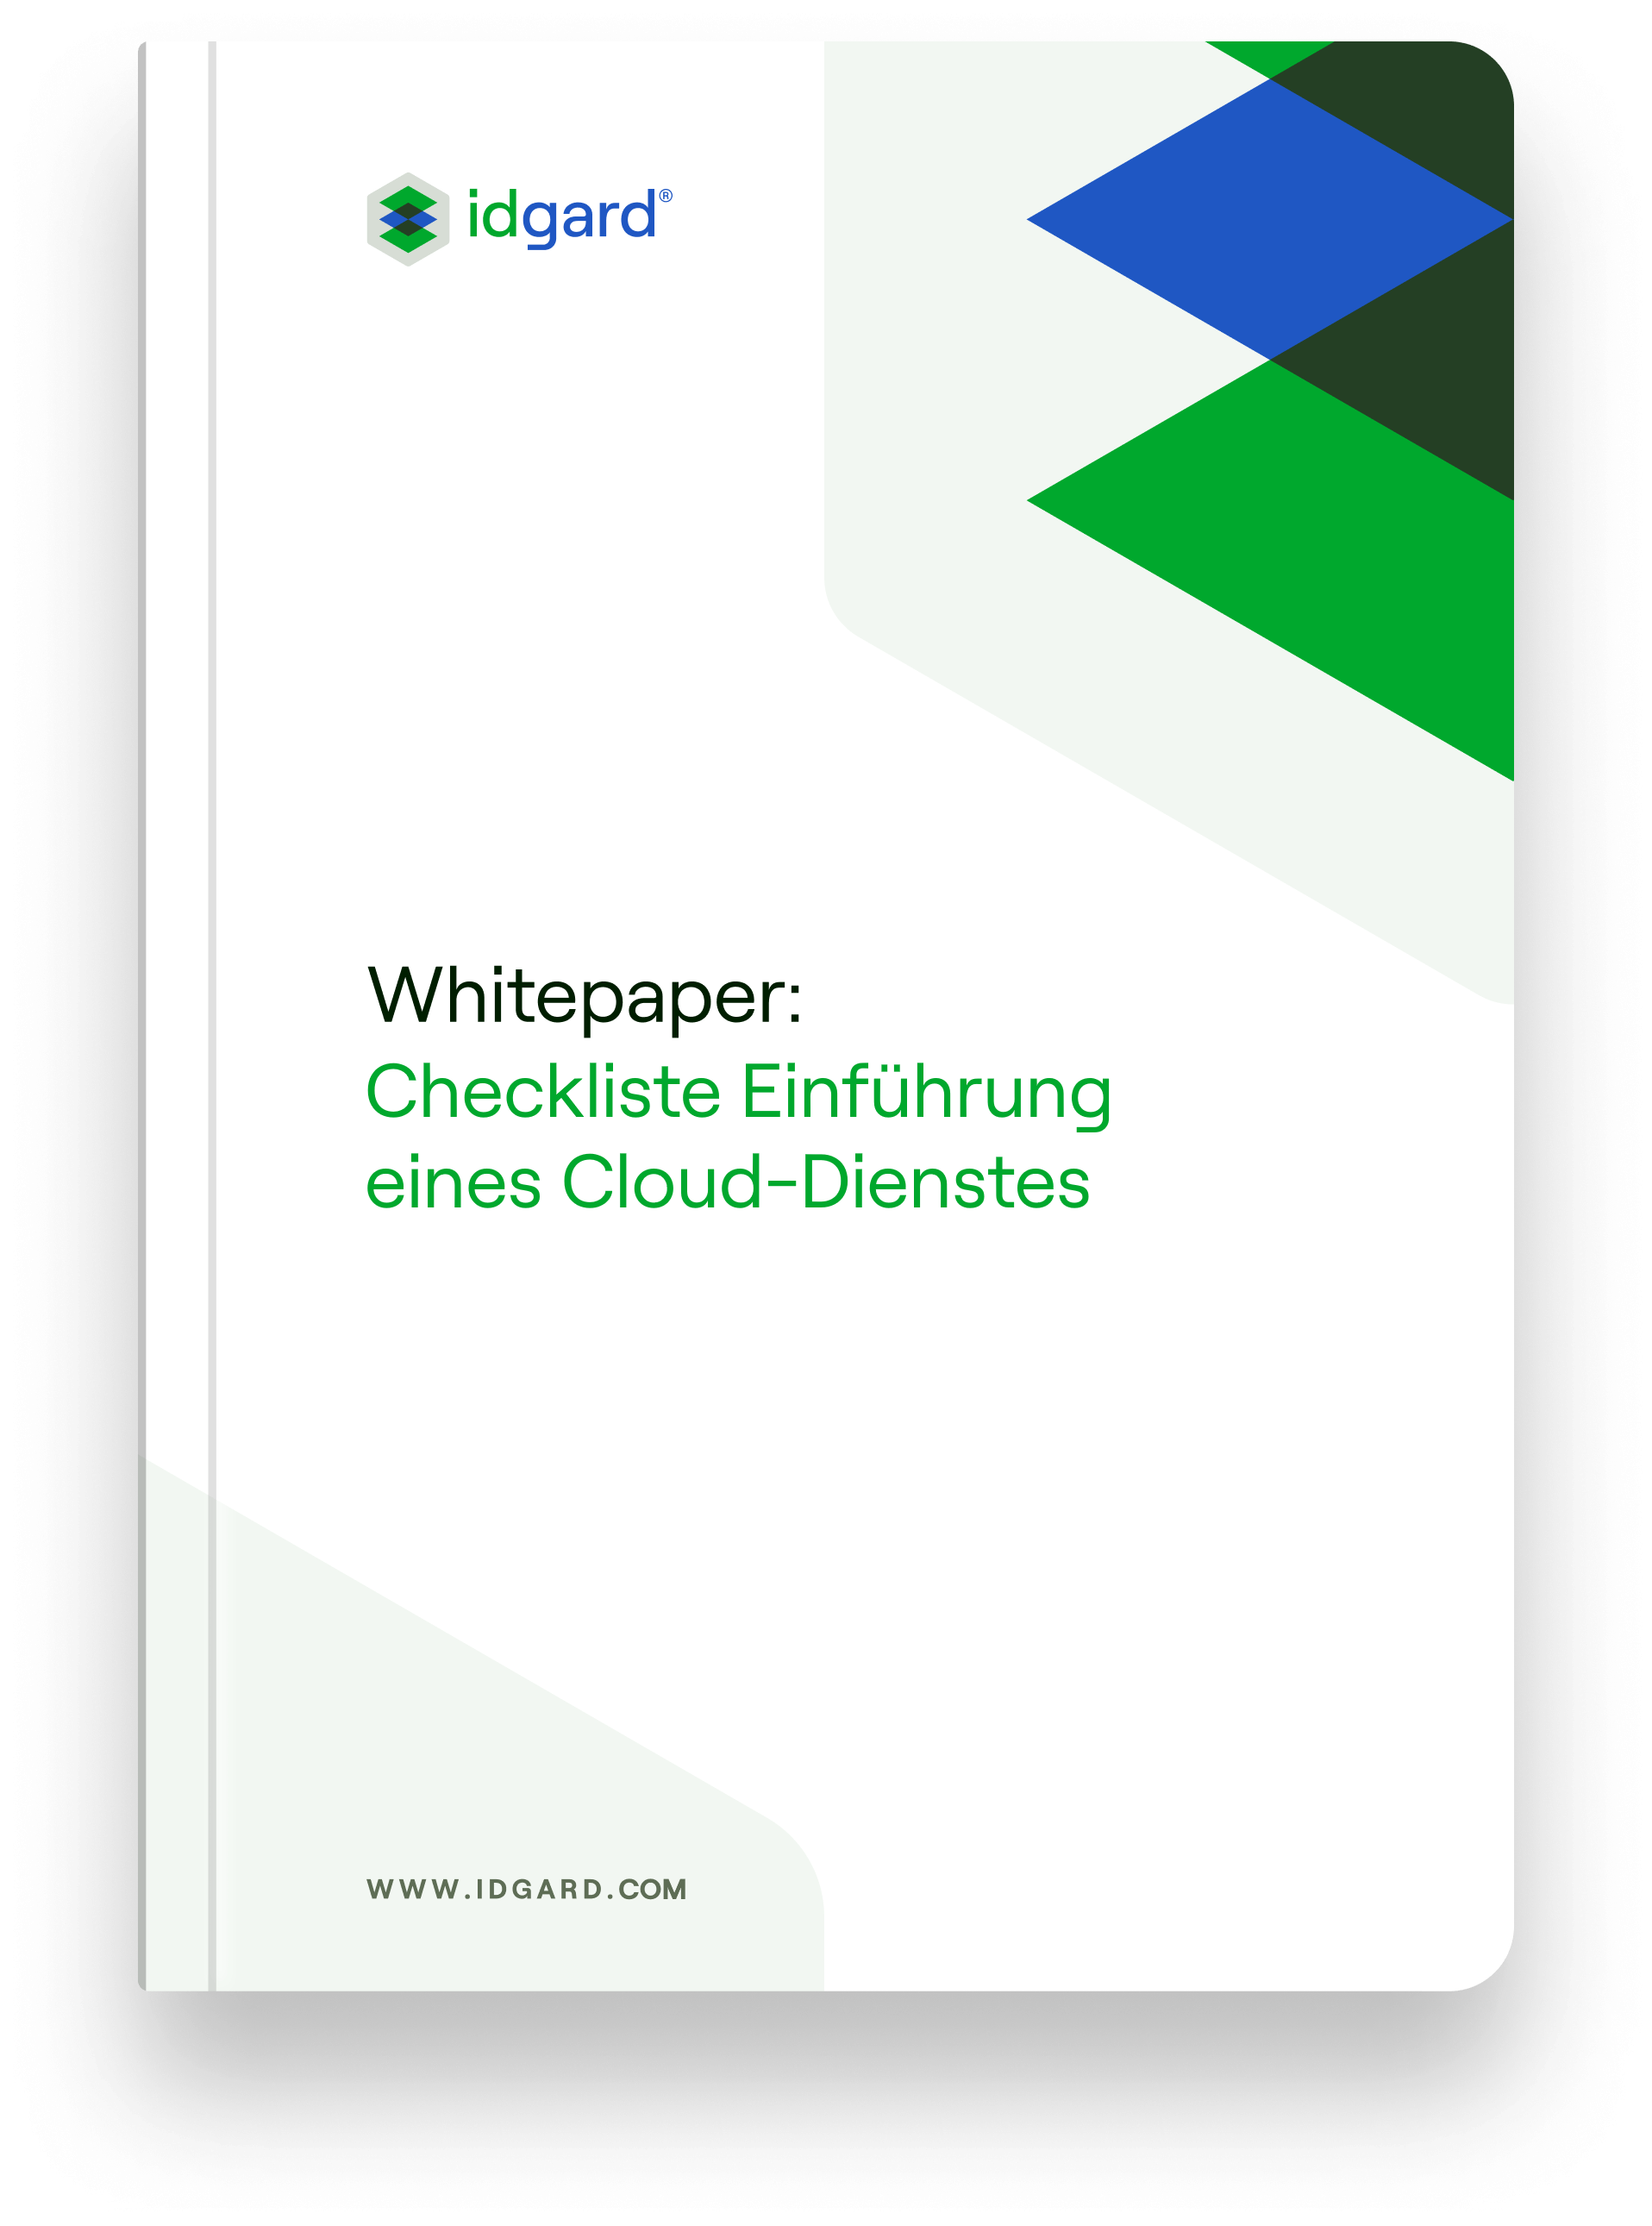 Whitepaper Checkliste Einführung eines Cloud-Dienstes